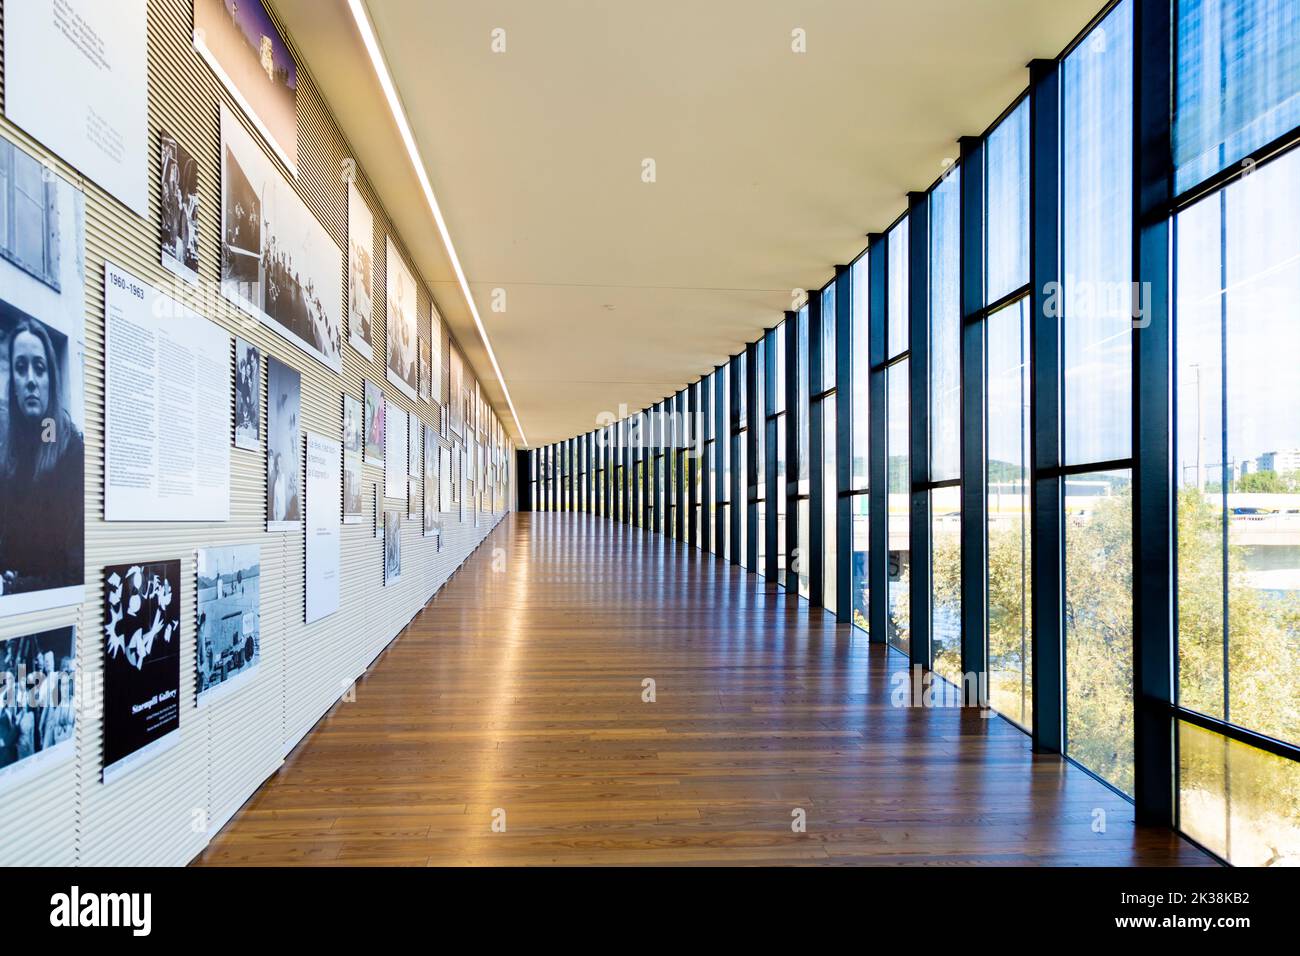 Interieur des Museums Tinguely gestaltet von Mario Botta, Basel, Schweiz Stockfoto